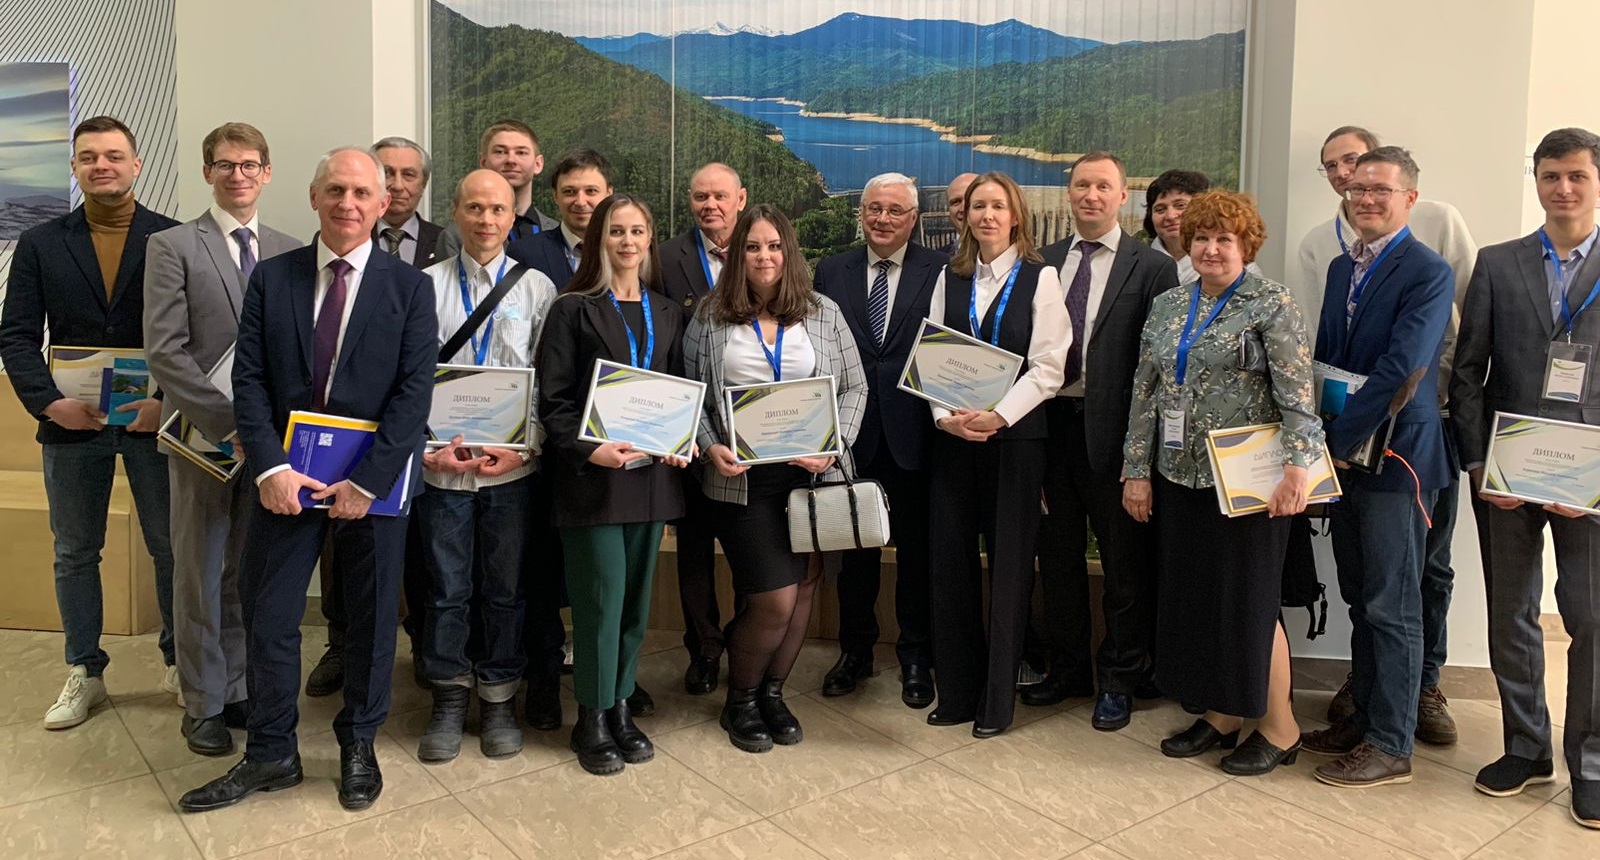 1 марта 2023 года состоялось вручение дипломов победителям Всероссийских конкурсов работ в области гидроэнергетики 2022 года, организованных Ассоциацией 